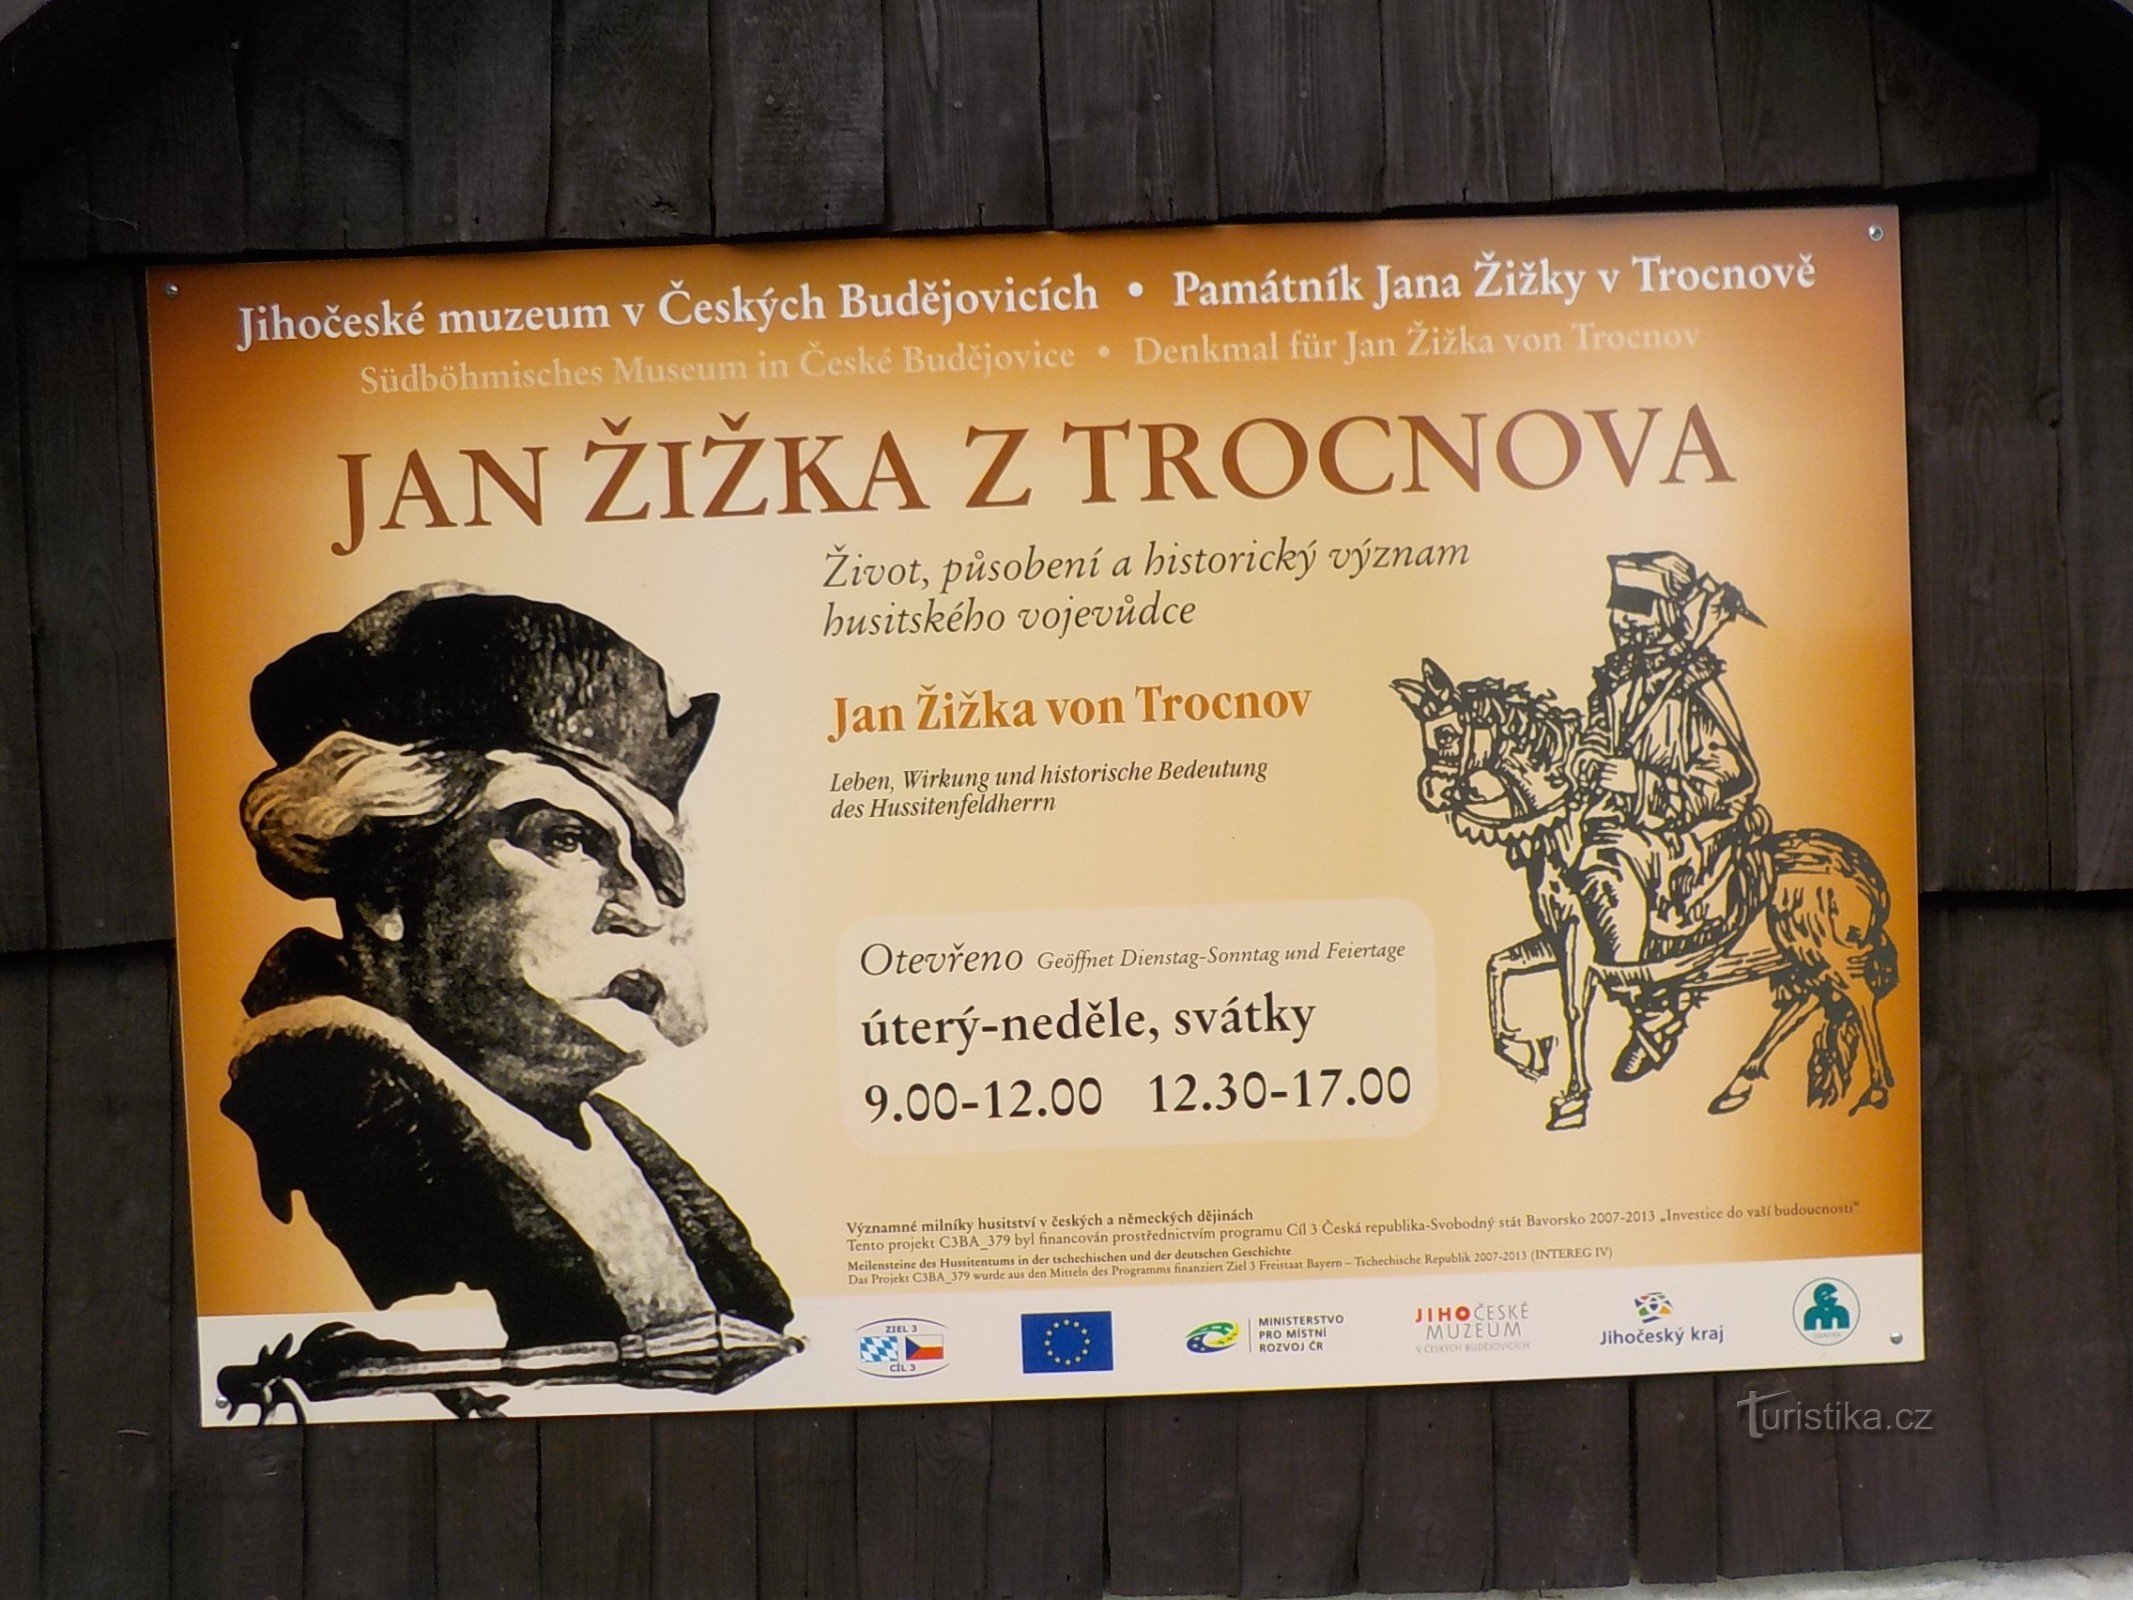 Bakom Jan Žižka och hans liv